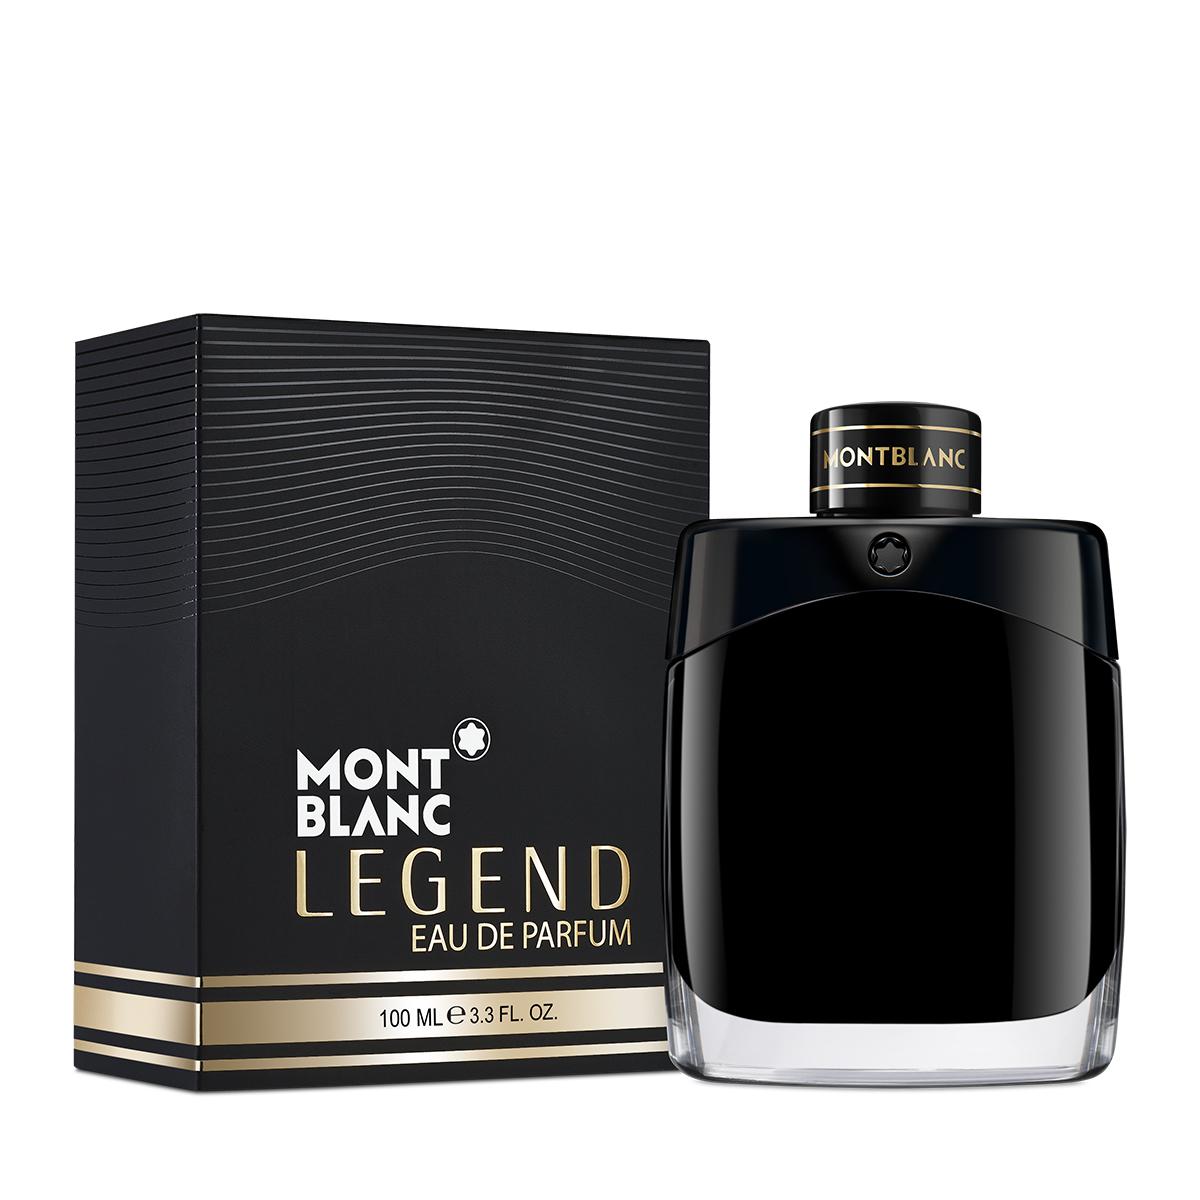 MONTBLANC - Legend Eau de Parfum